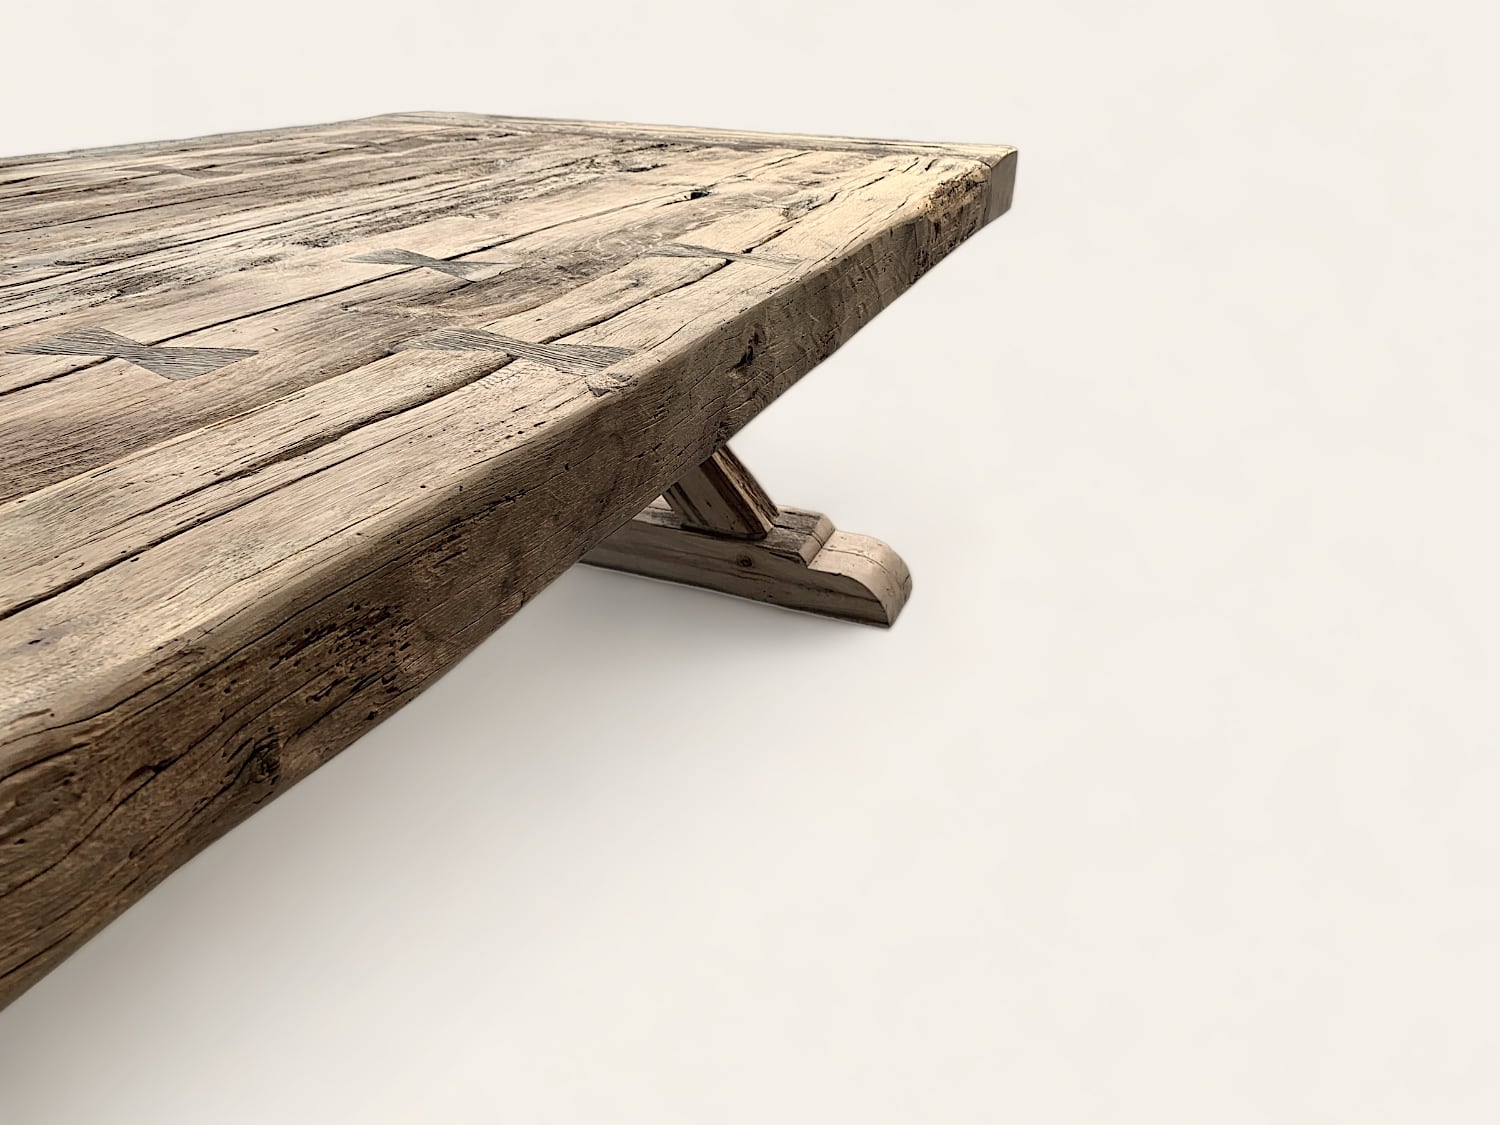 Une table fermette en bois ancien sur fond blanc.